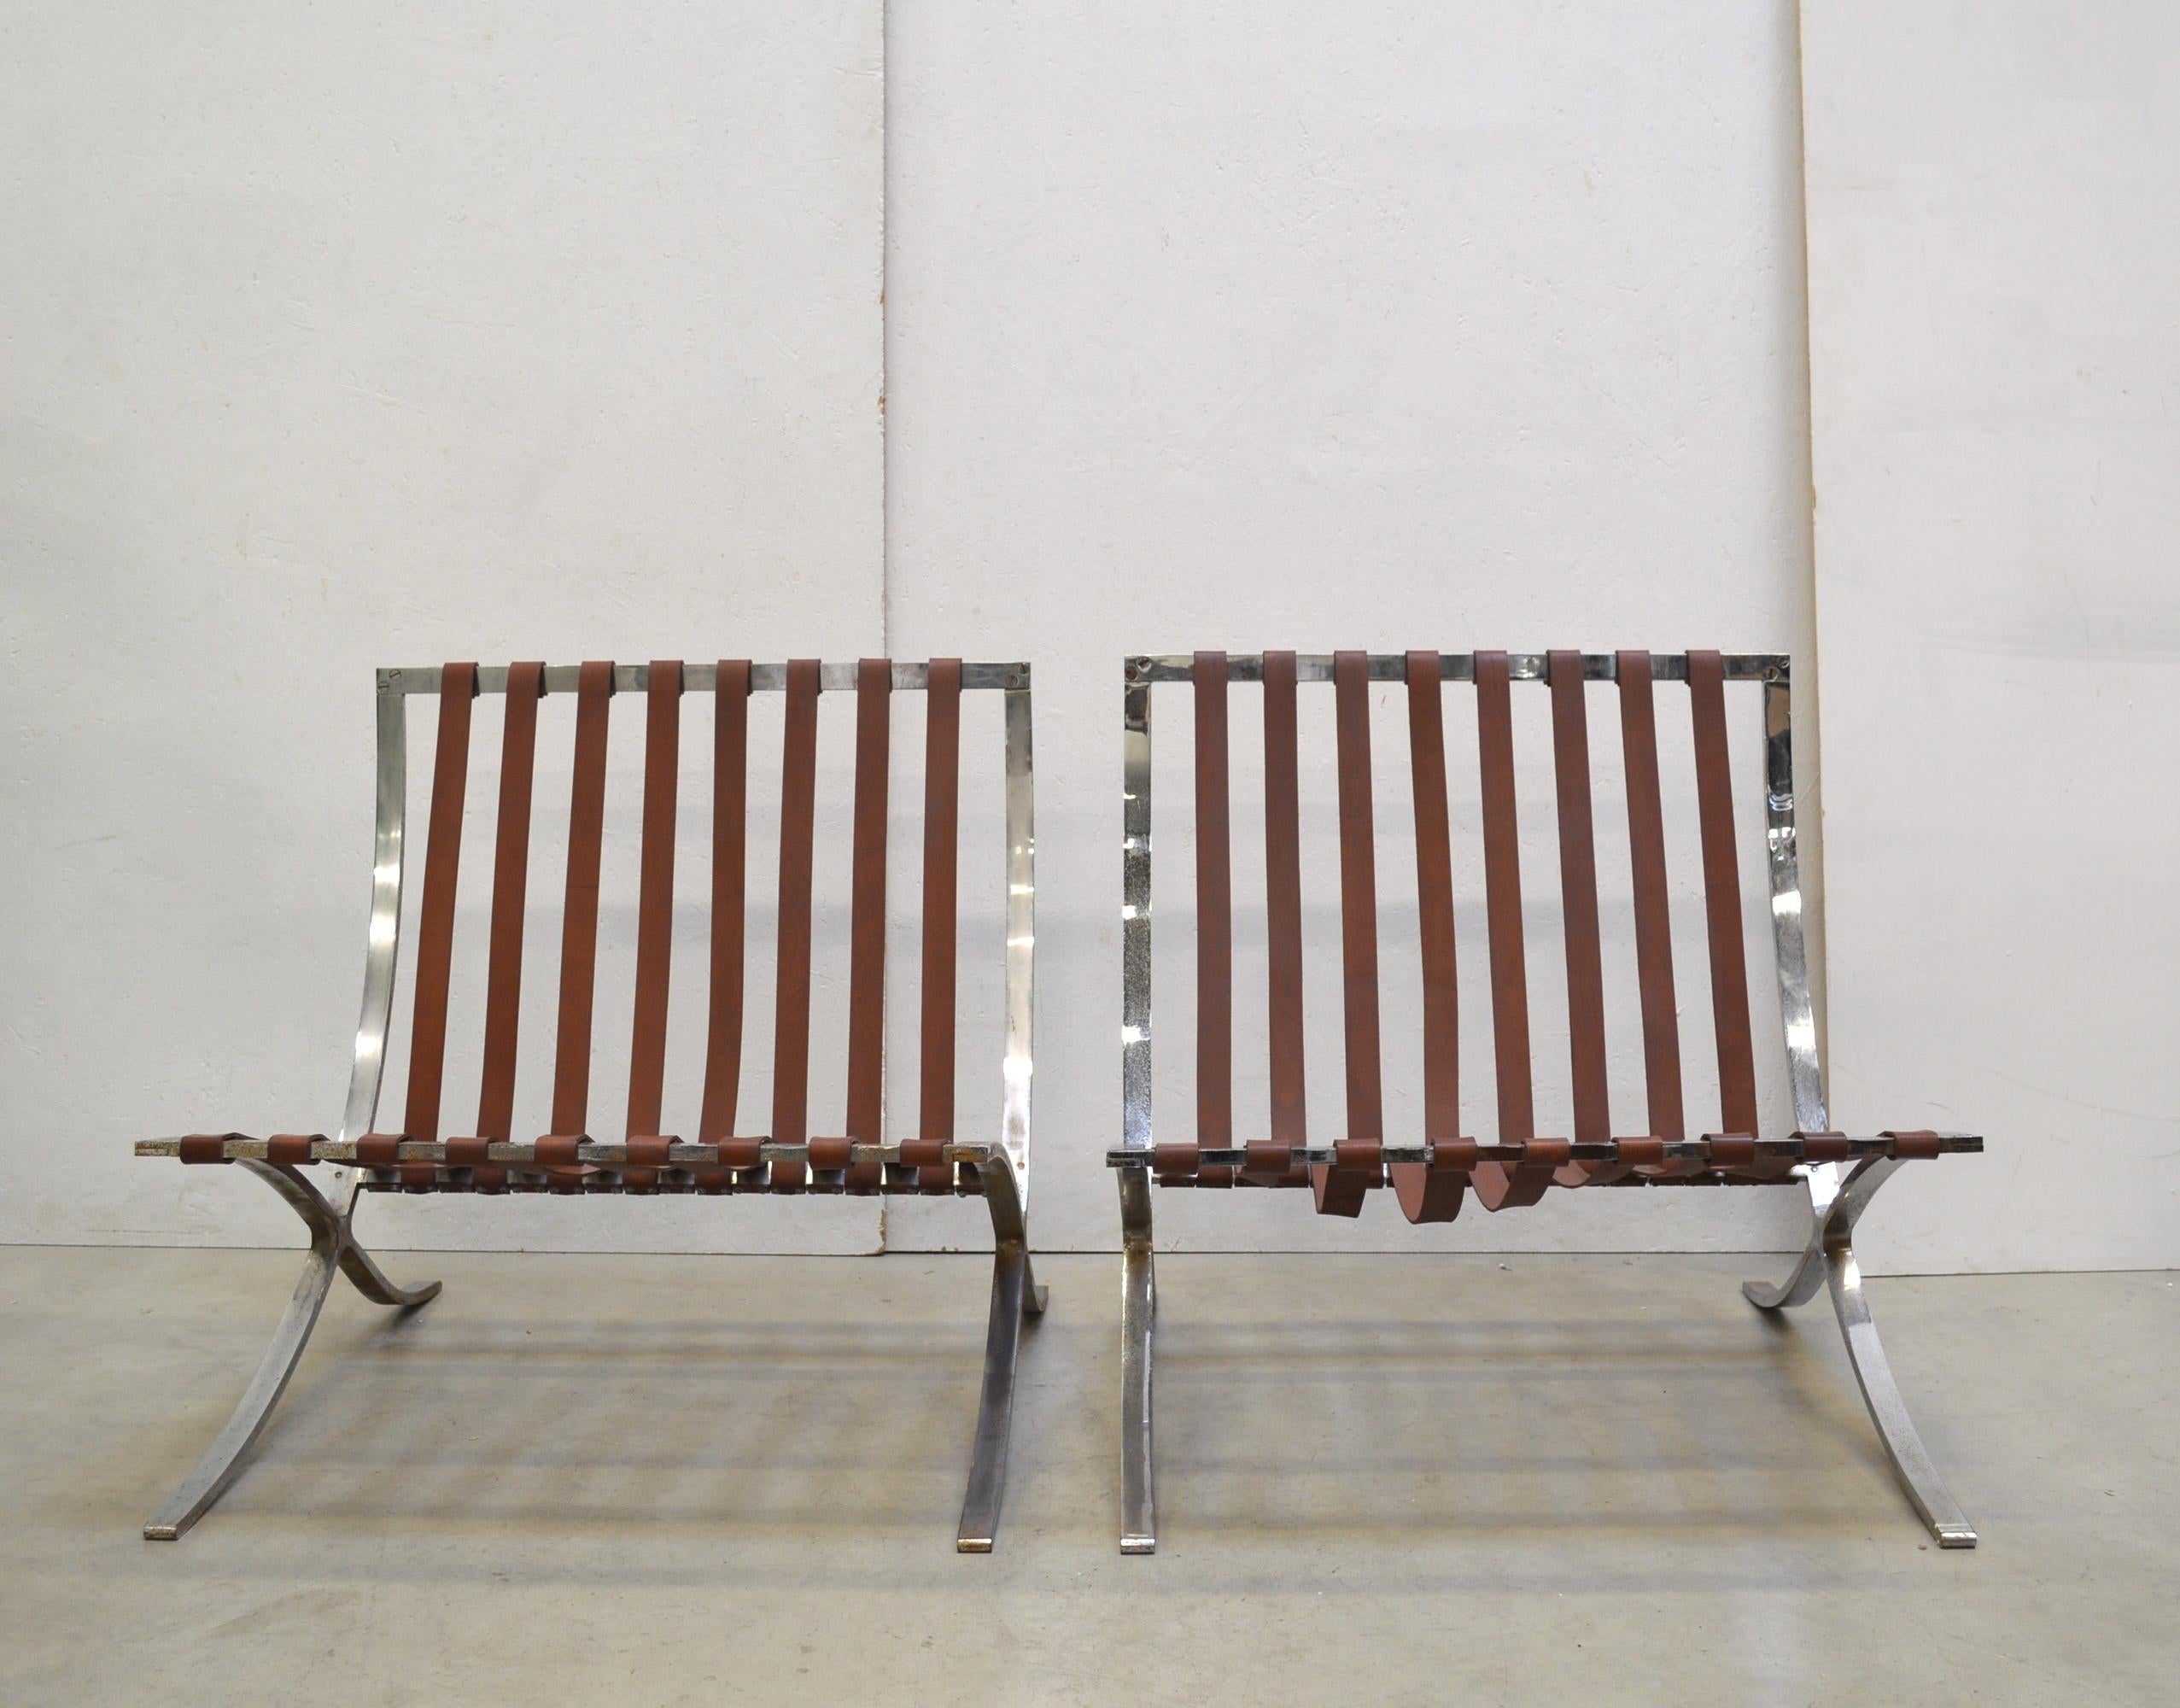 Diese seltenen Barcelona-Stühle wurden 1929 von Mies van der Rohe für den berühmten Barcelona-Pavillon entworfen und in den 1950er Jahren von Stiegler produziert. 

Stiegler war ein kleines Unternehmen, das zwischen 1954 und 1976 die Rahmen für